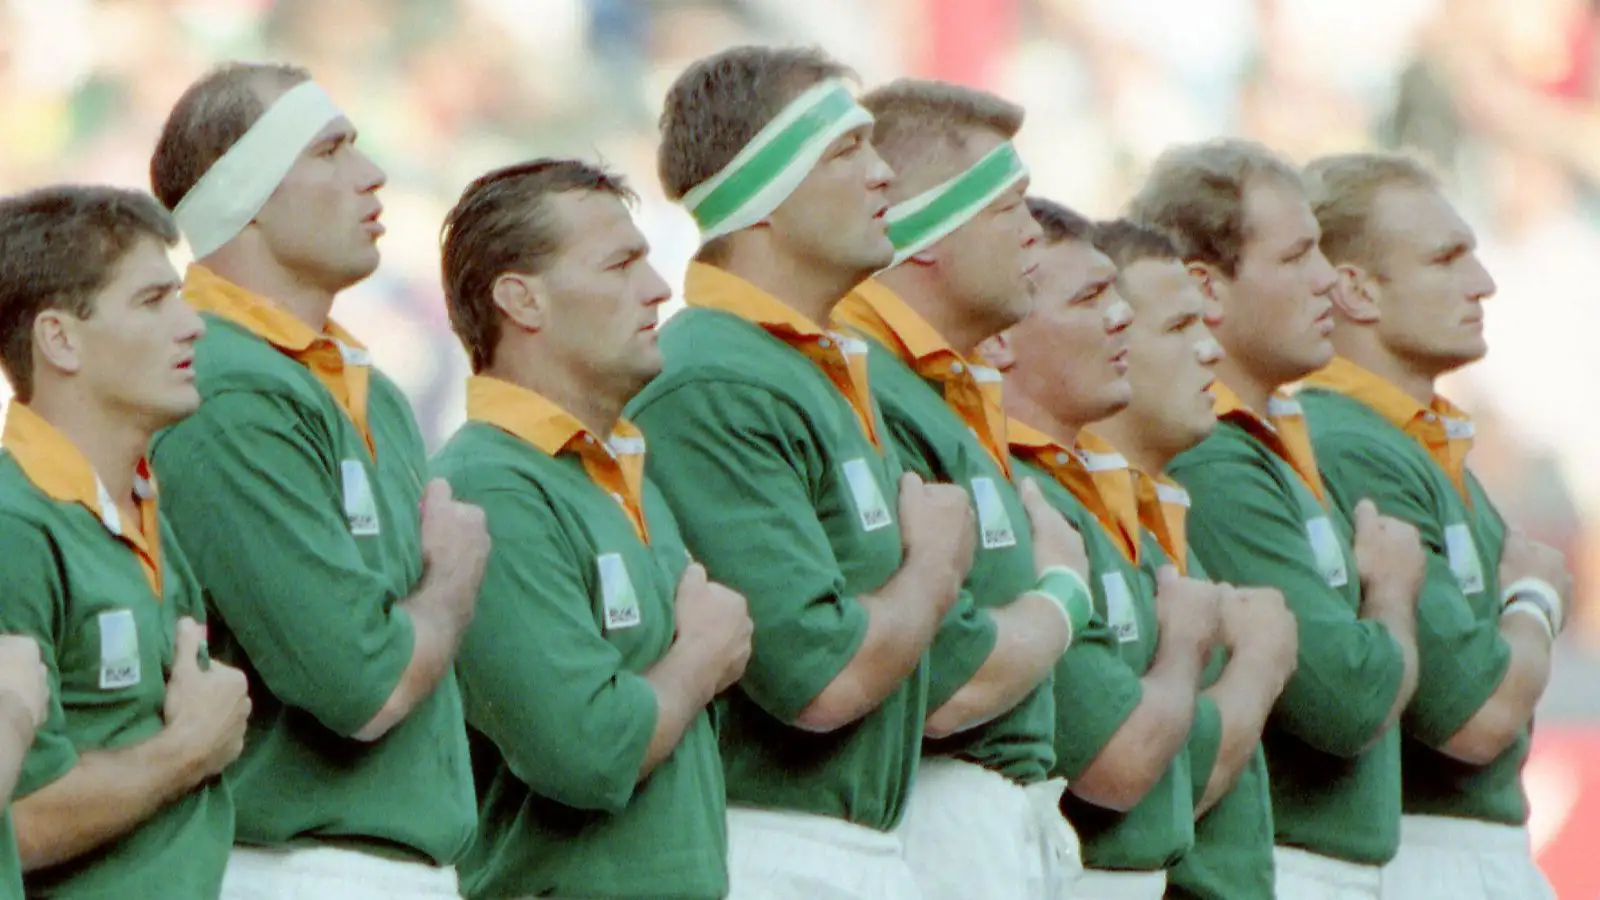 Joueurs sud-africains pendant l'hymne national avant le début de la finale de la Coupe du monde de rugby entre l'Afrique du Sud et la Nouvelle-Zélande à Ellis Park, Johannesburg en 1995 avec Hannes Strydom photographié aux côtés de Kobus Wiese.